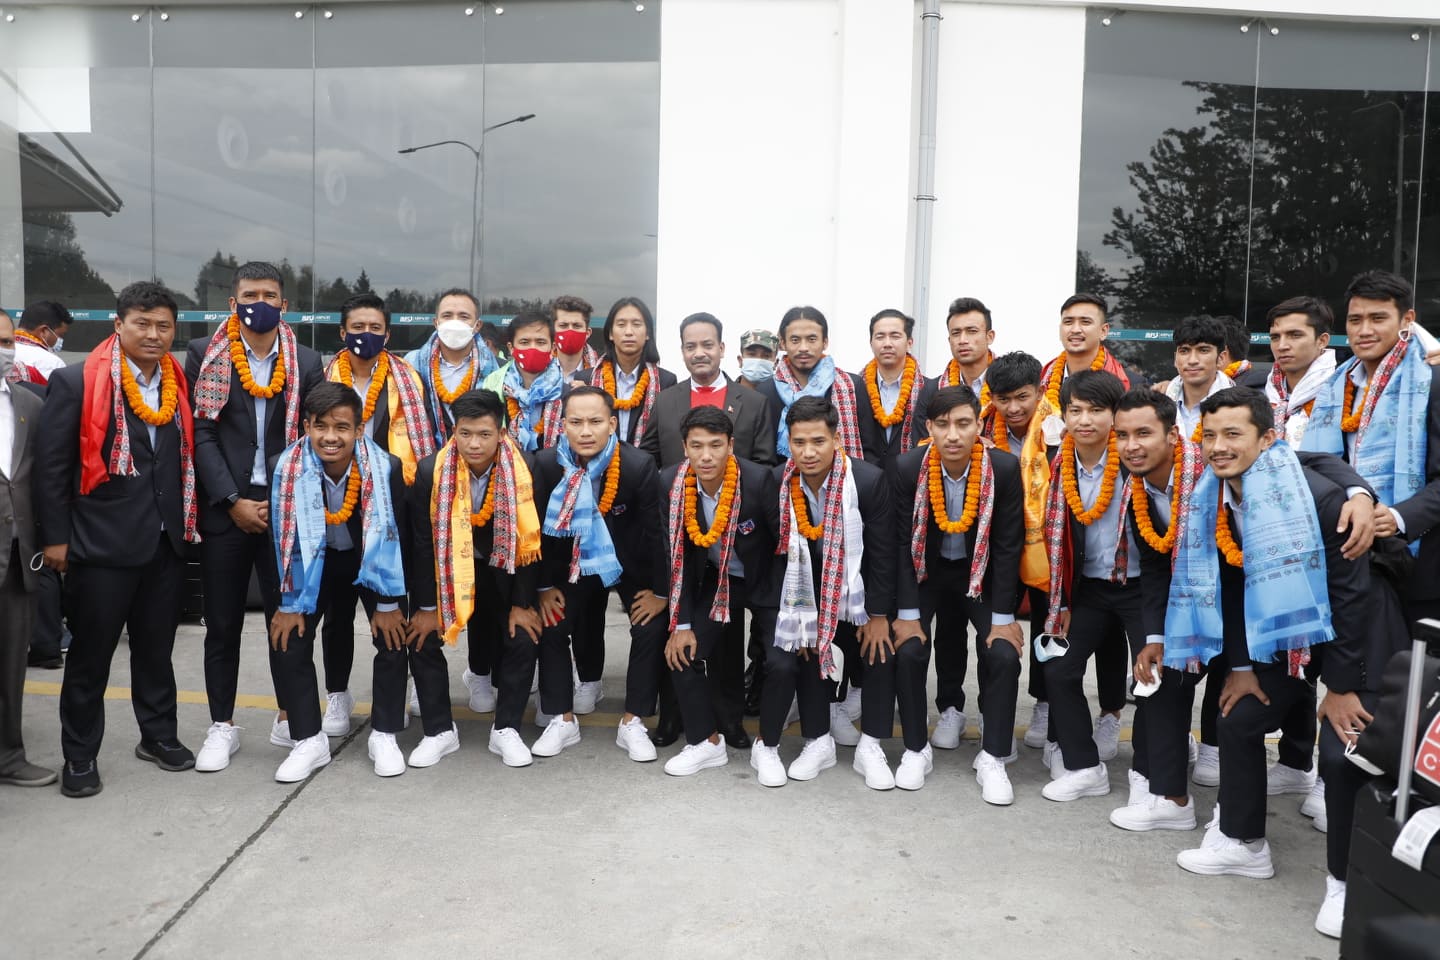 साफ उपविजेता बनेको नेपाली फुटबल टिमलाई खेलकुदमन्त्रीले गरे स्वागत